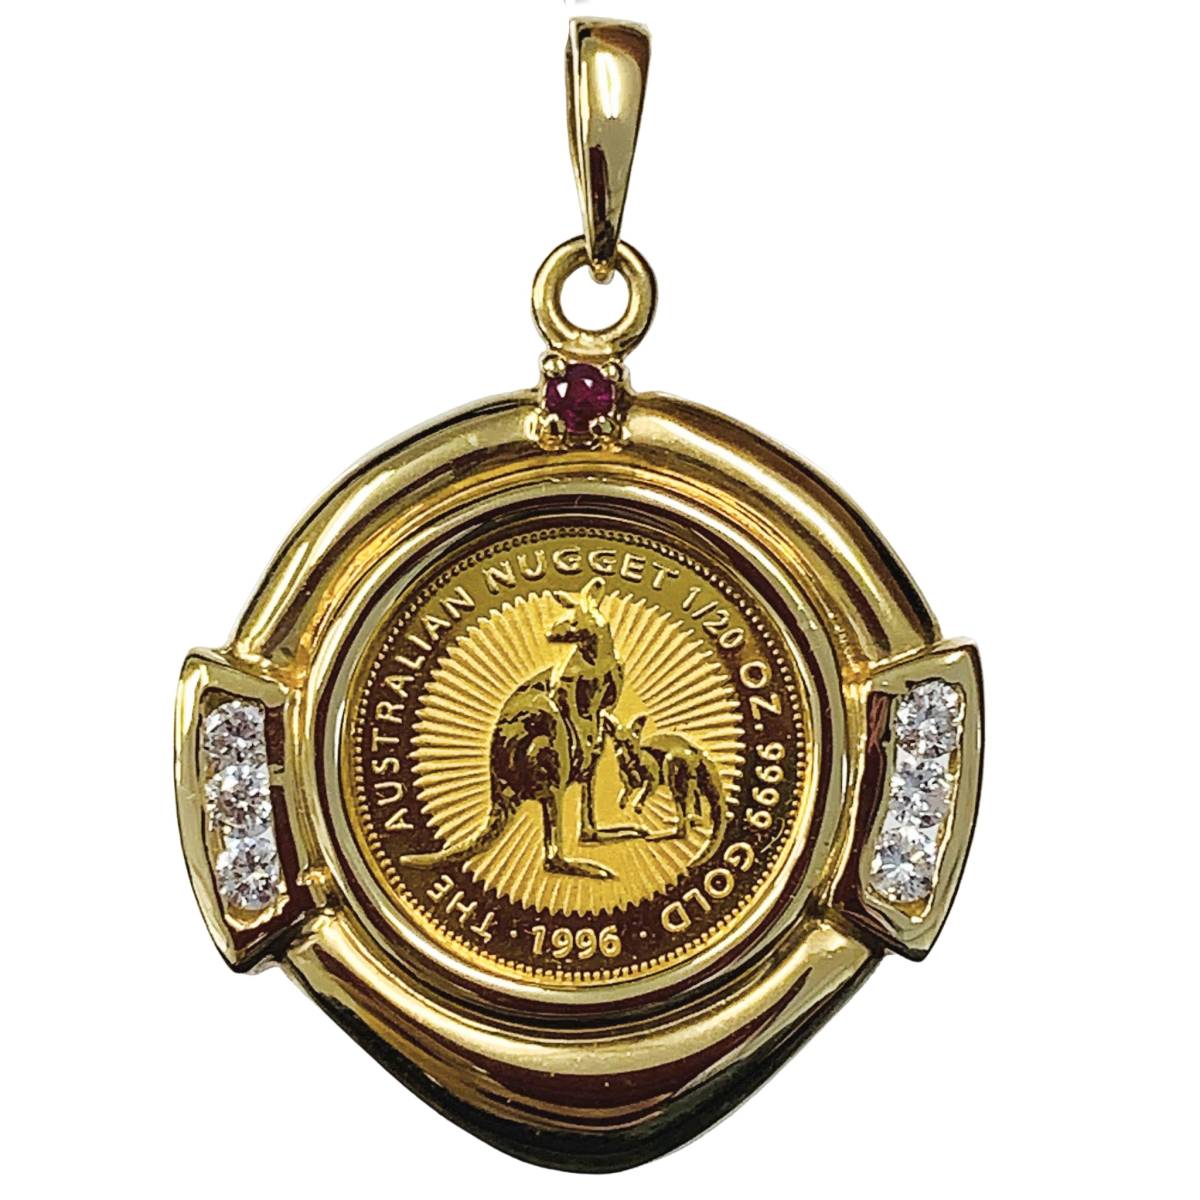 カンガルー ナゲット金貨 オーストラリア エリザベス女王 1996年 K18/24 純金 6.5g 1/20オンス ダイヤモンド ルビー コイントップ